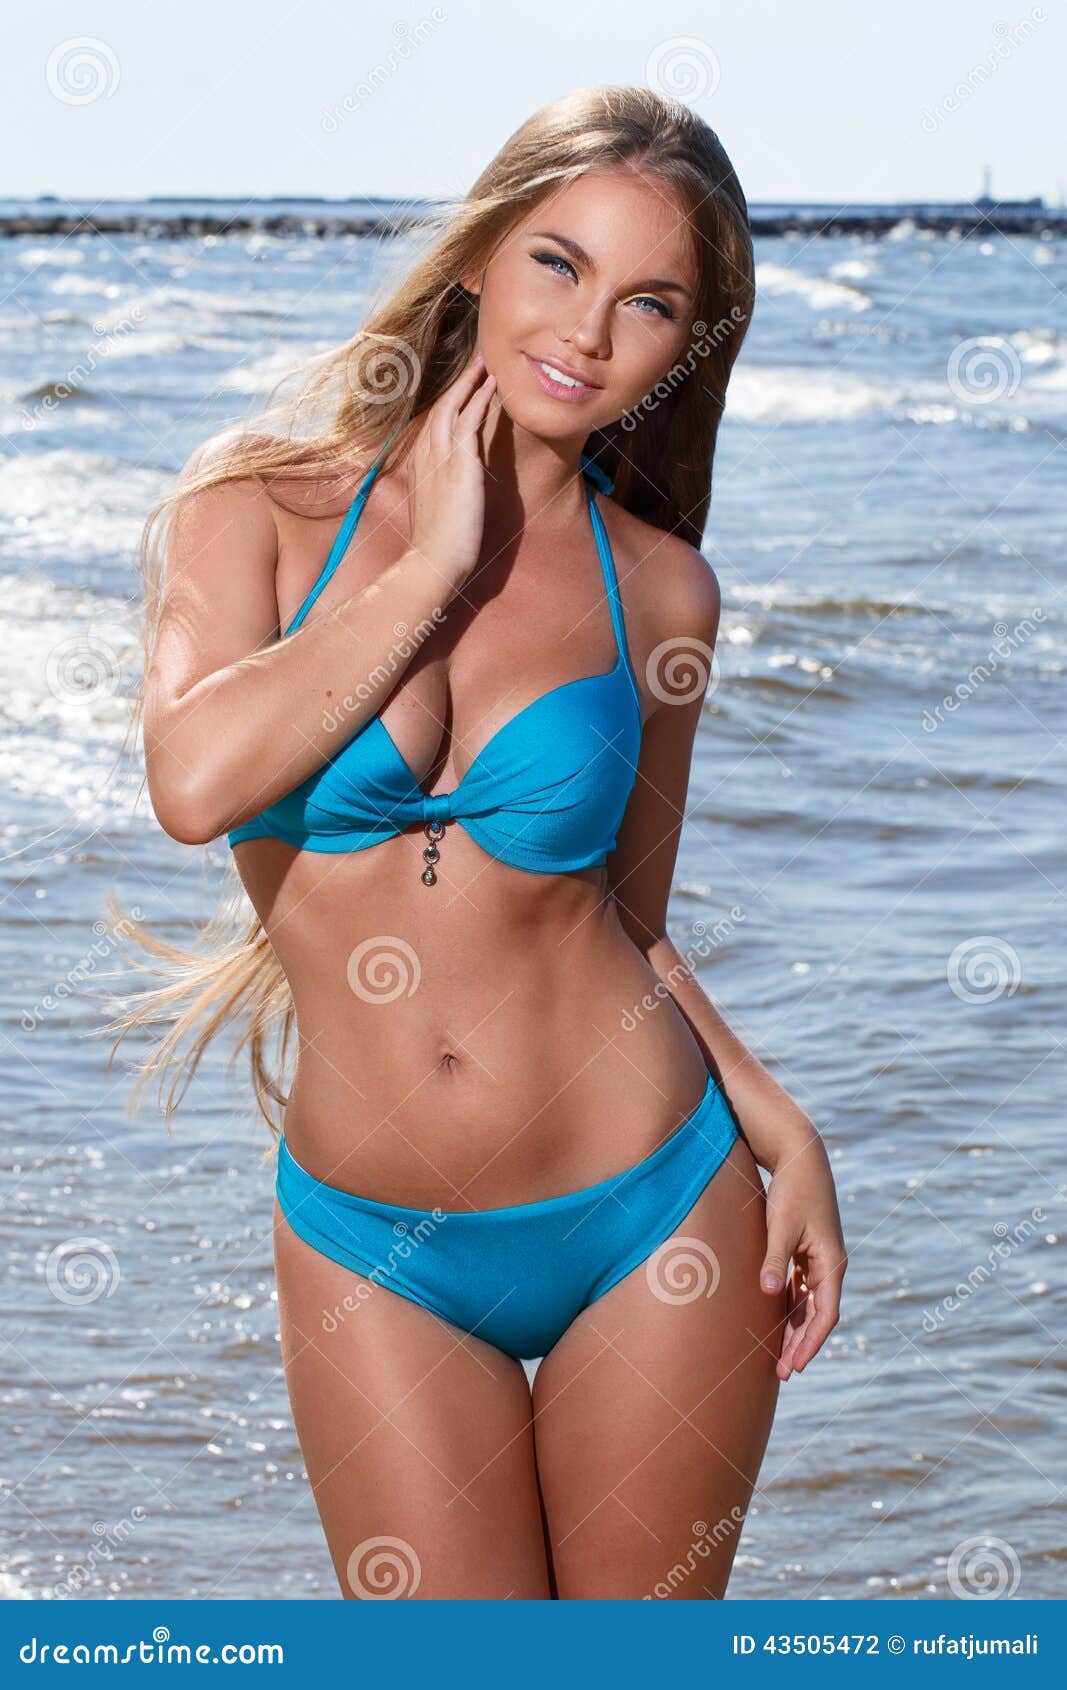 aaliyah el amin add hot girl on the beach photo